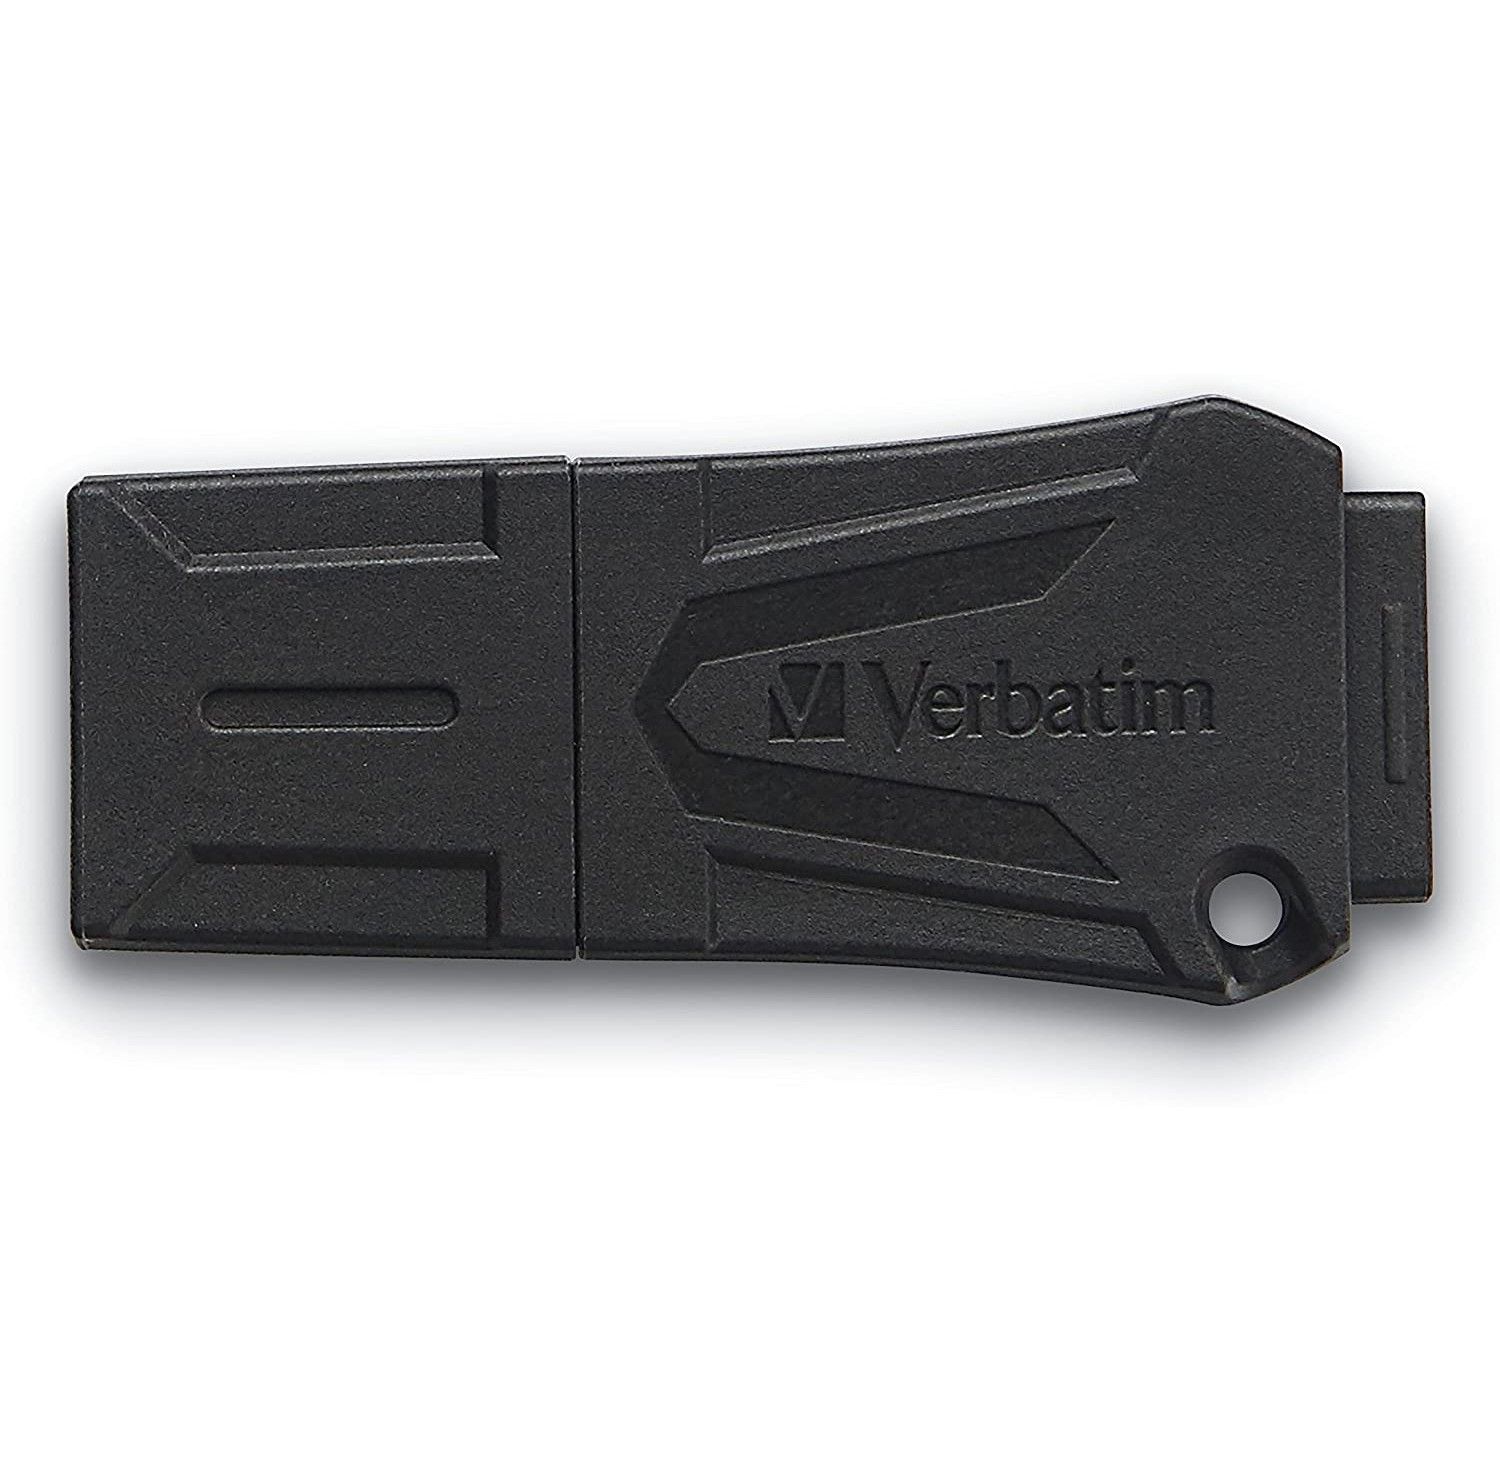 Verbatim ToughMAX USB Flash Drive Water Resistant